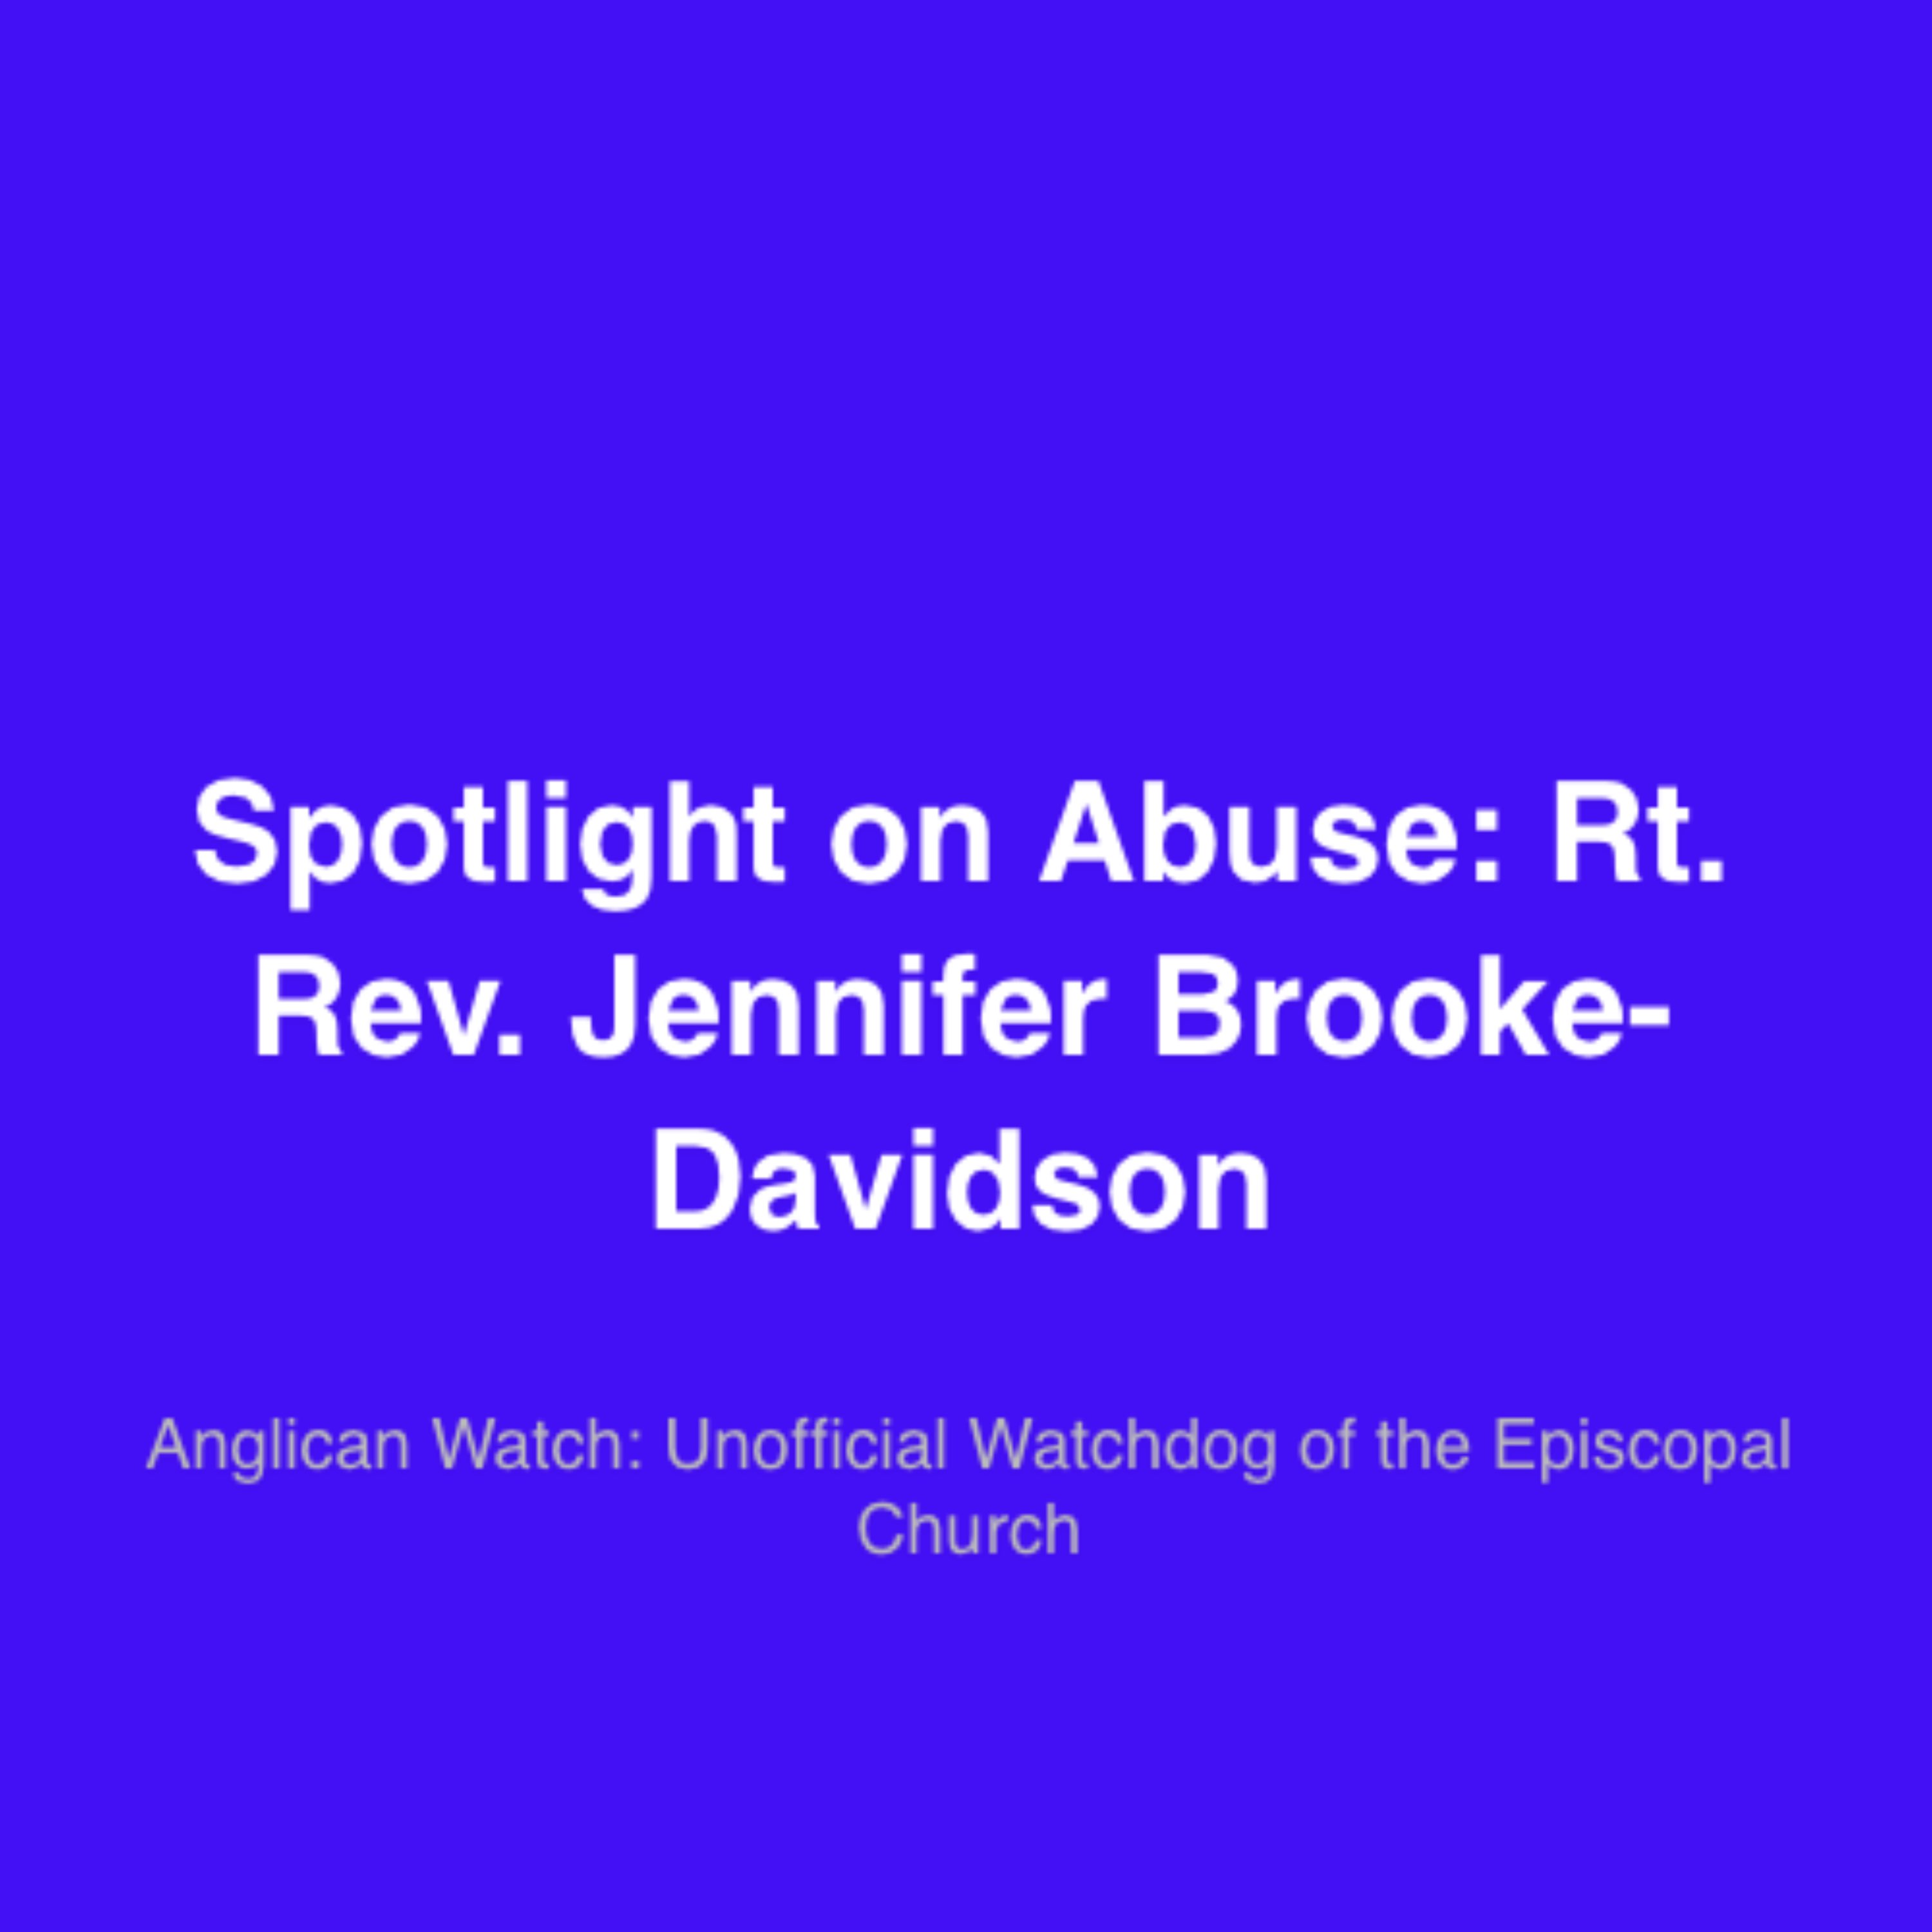 Spotlight on abuse: Rt. Rev. Jennifer Brooke-Davidson